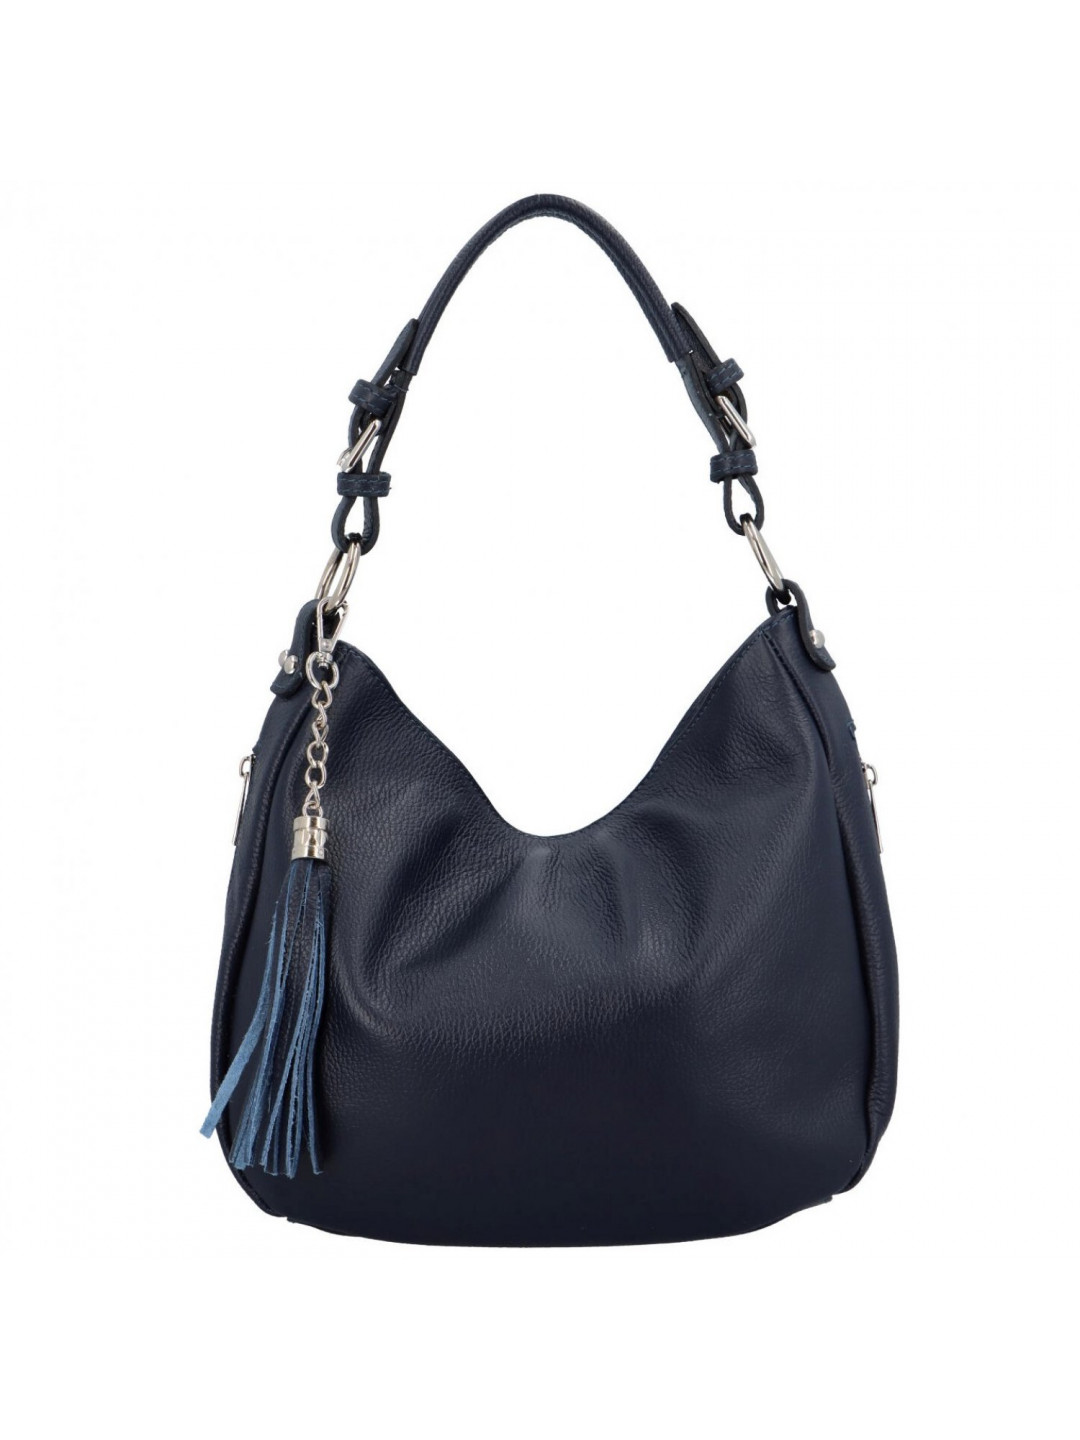 Luxusní dámská kožená kabelka přes rameno Euda tmavě modrá